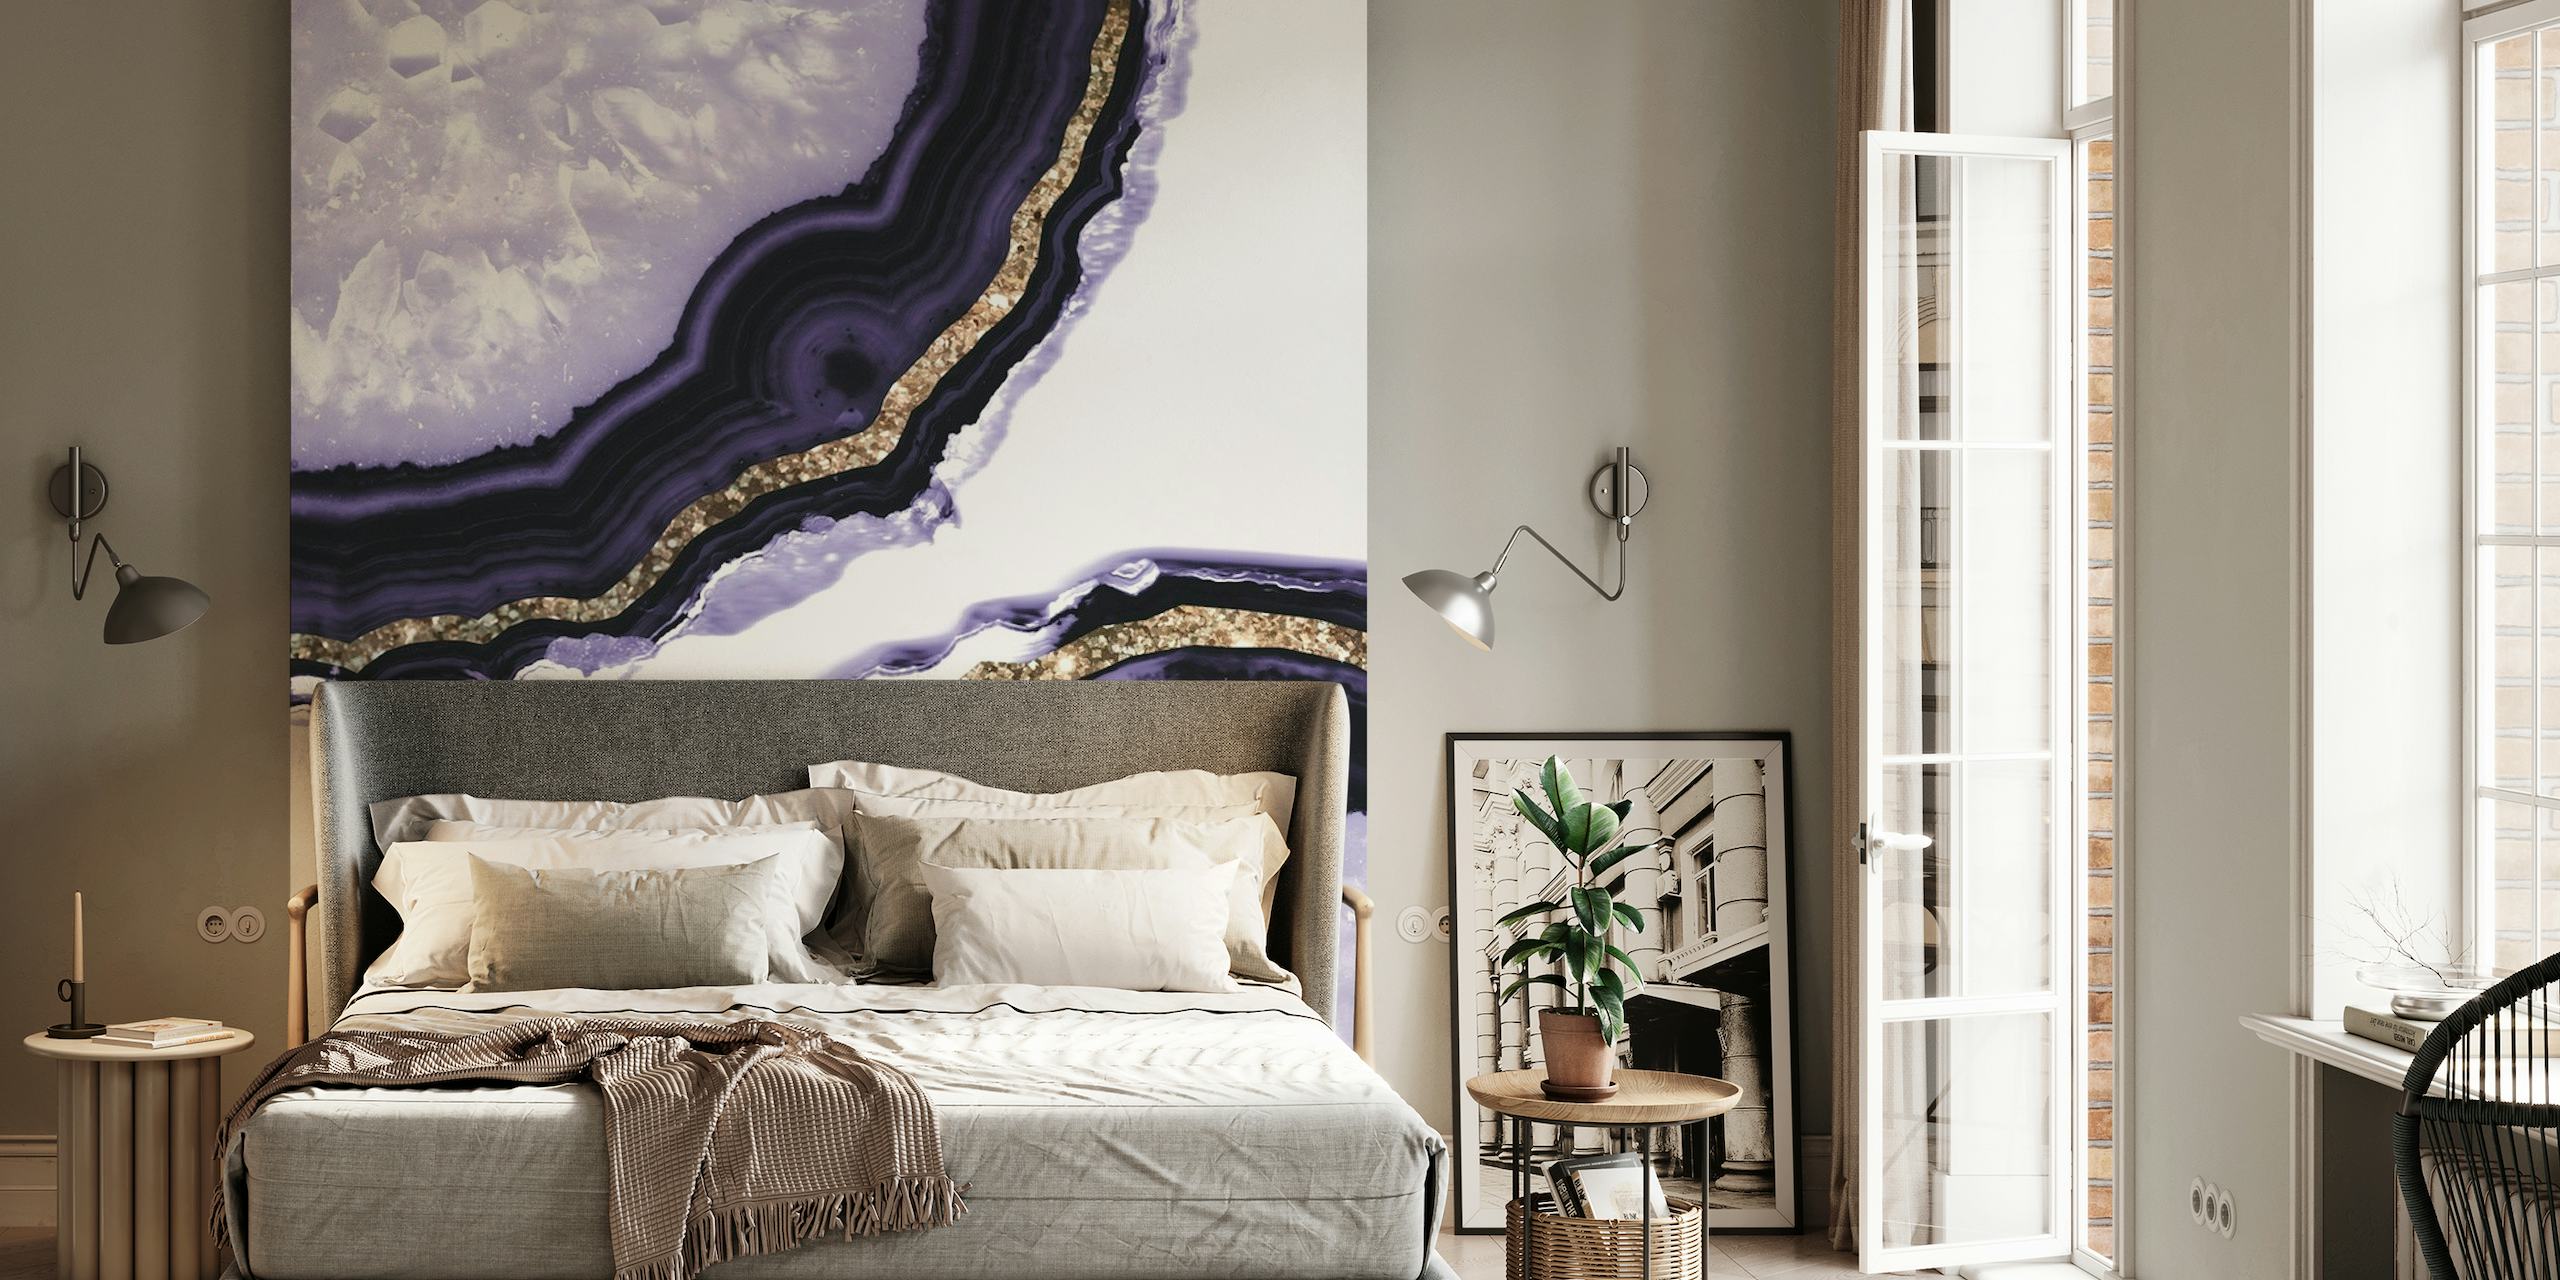 Fotomural vinílico de parede com padrão de fatia de ágata preta e dourada para decoração de interiores luxuosa